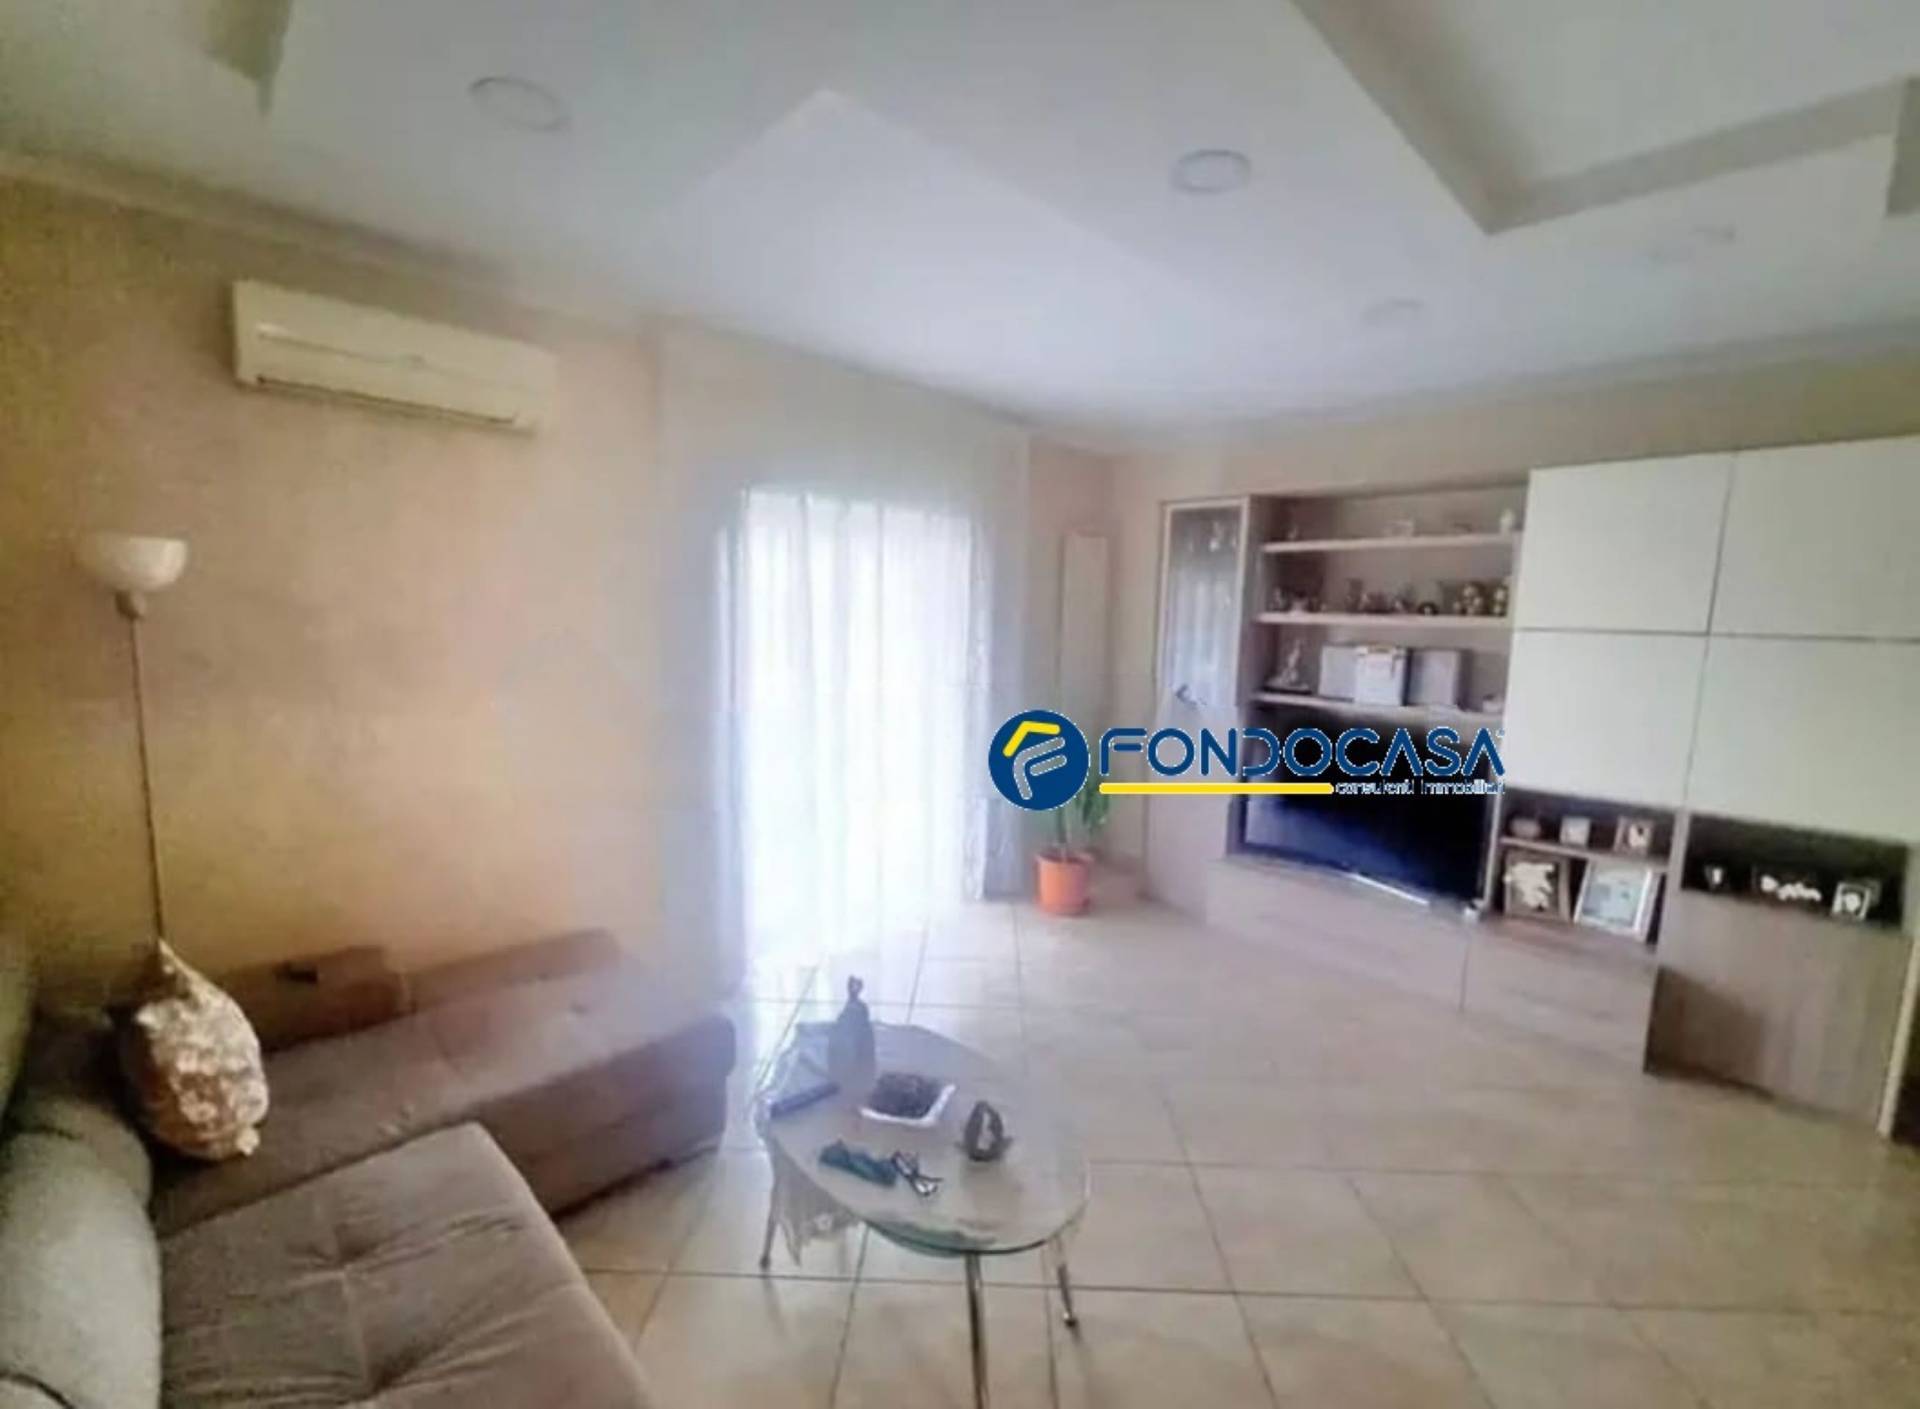 Appartamento in vendita a Giugliano in Campania, 3 locali, prezzo € 160.000 | PortaleAgenzieImmobiliari.it